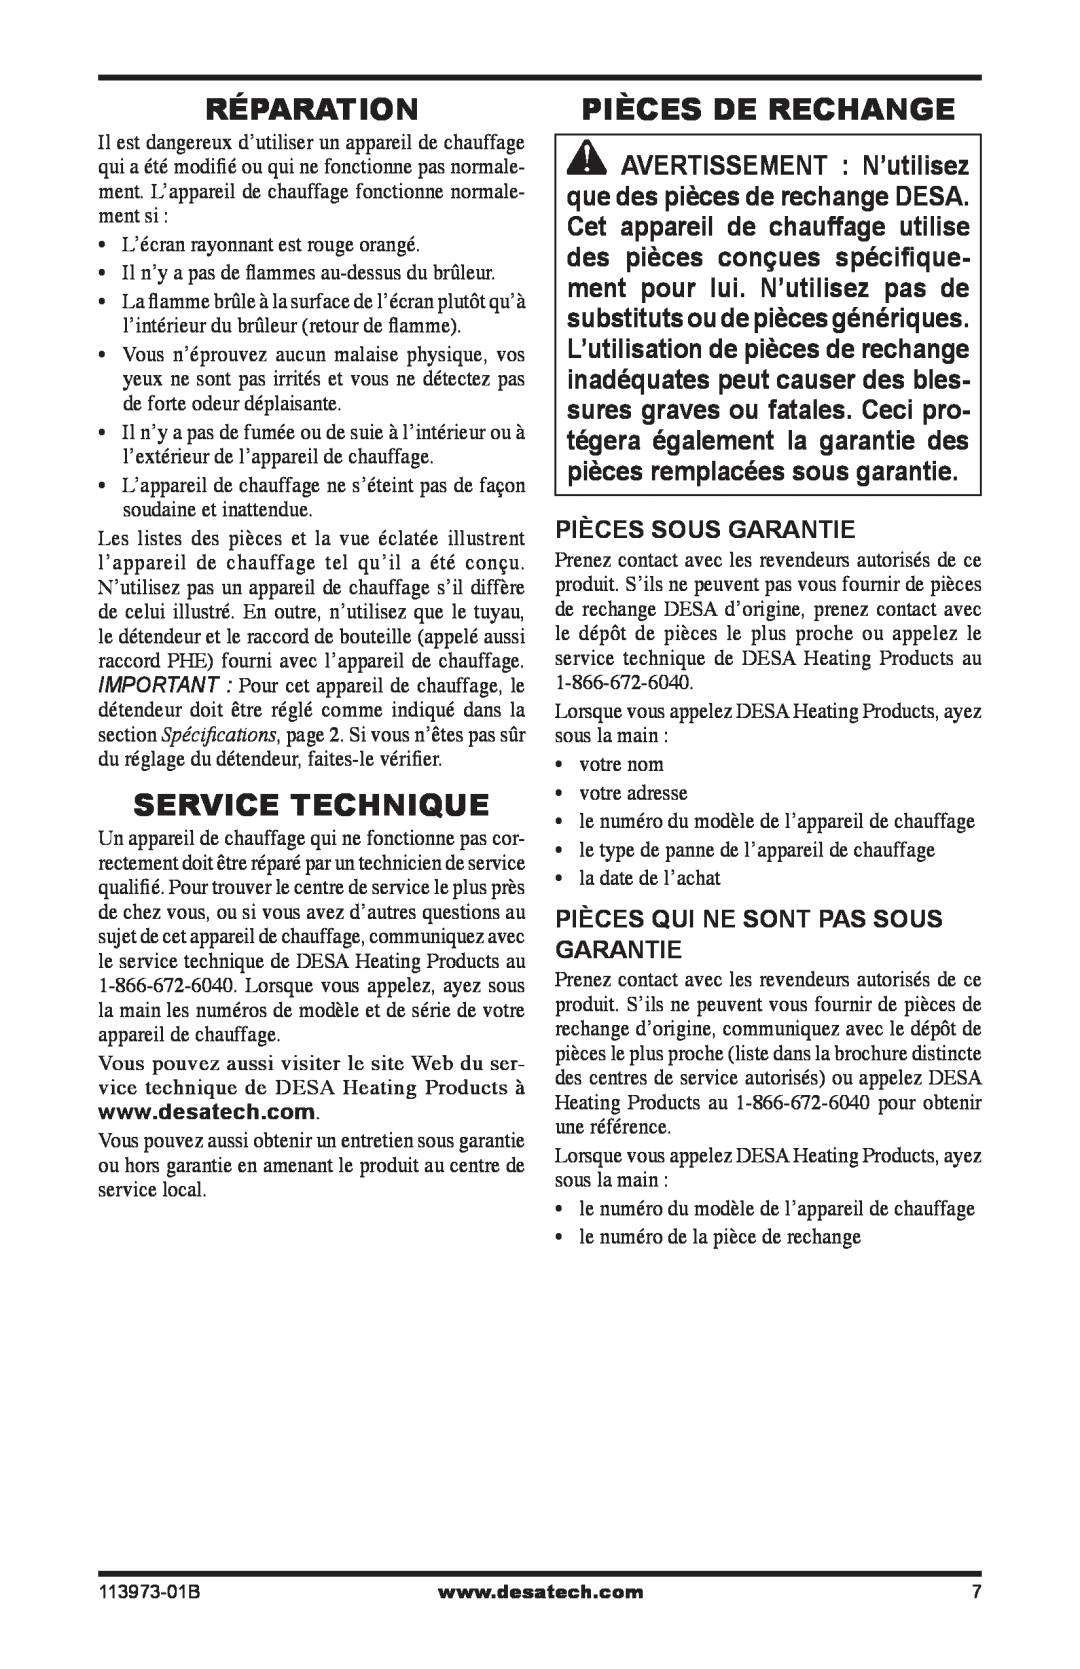 Desa AND TT30 10 owner manual Réparation, Service Technique, Pièces De Rechange, Pièces Sous Garantie 